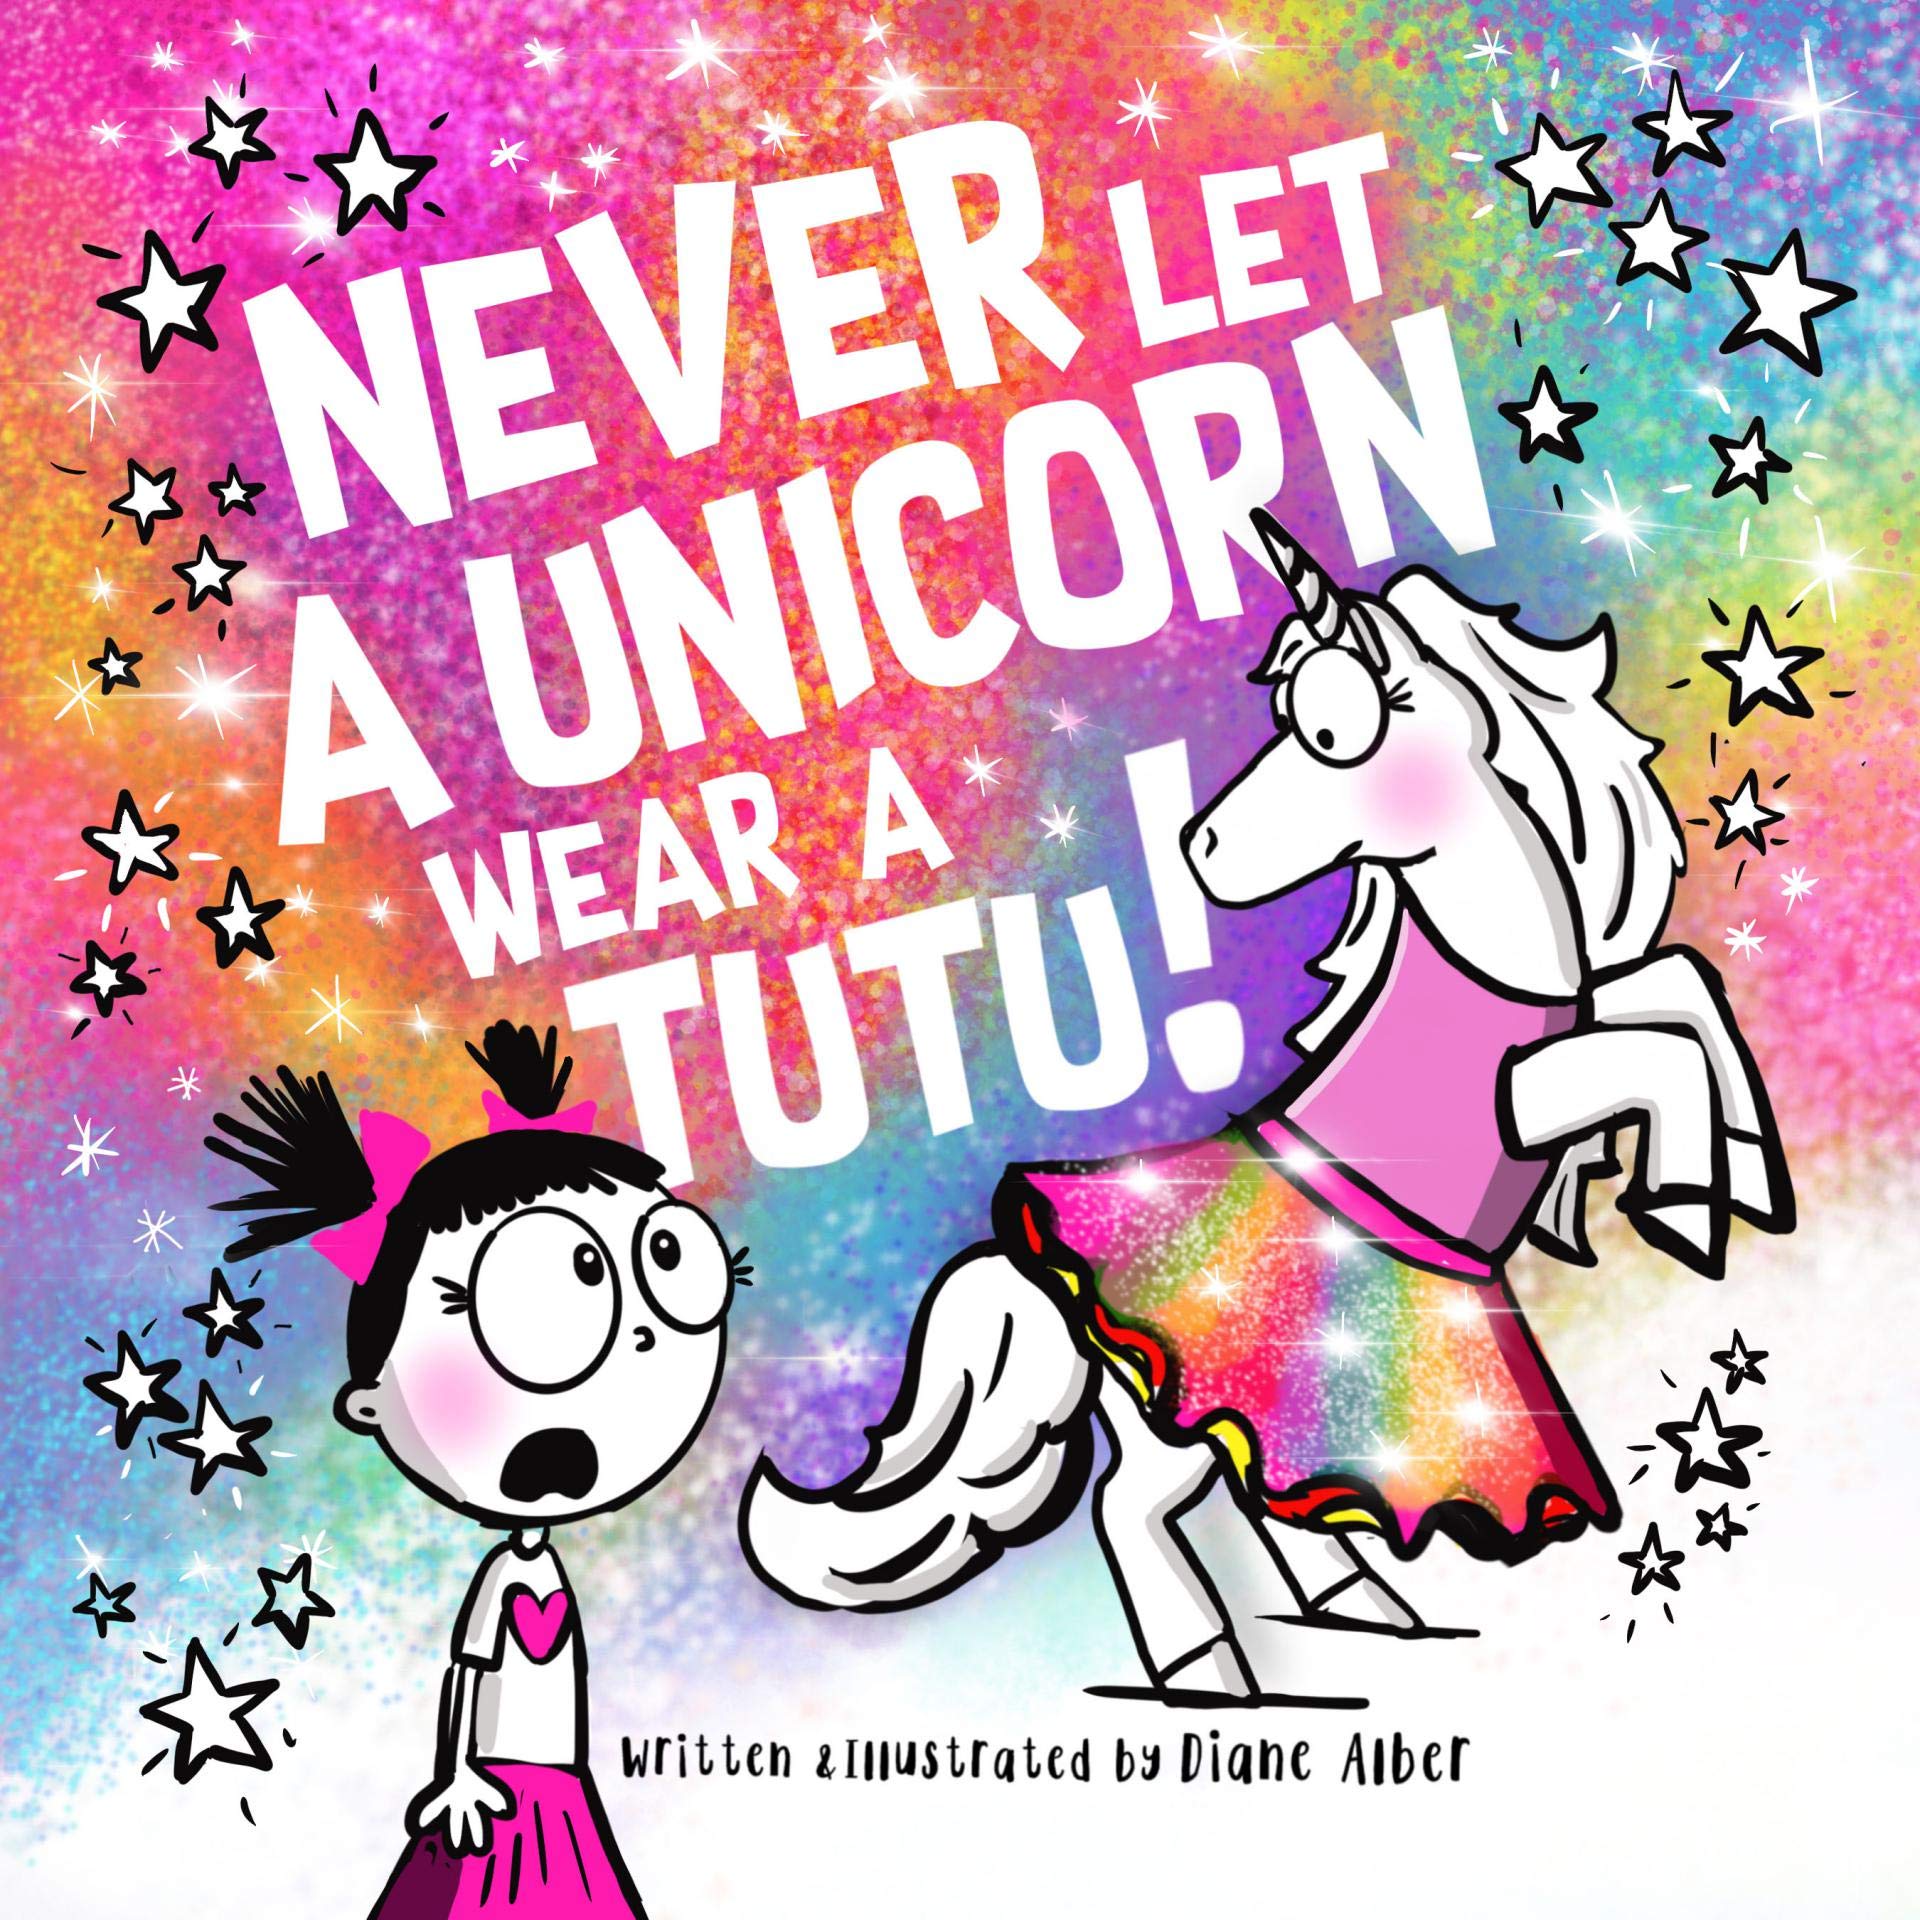  20 llibres d'unicorns recomanats pel professor per a nens